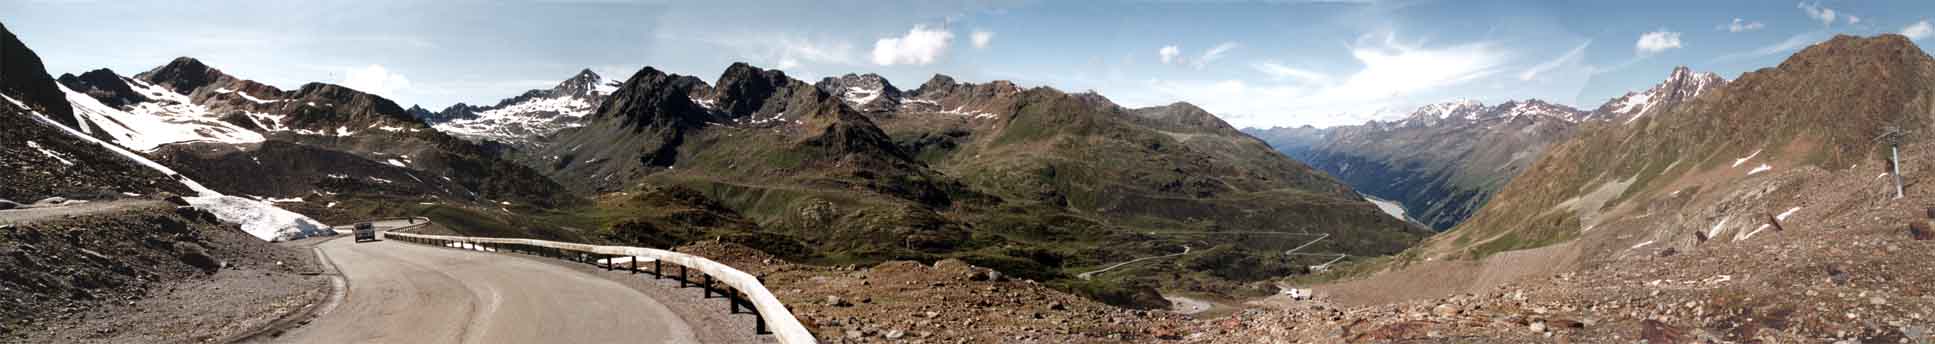 Das Panorama zeigt den Blick von der letzten Kehre zurück ins Tal in nord-westlicher Richtung.Torsten Kähler